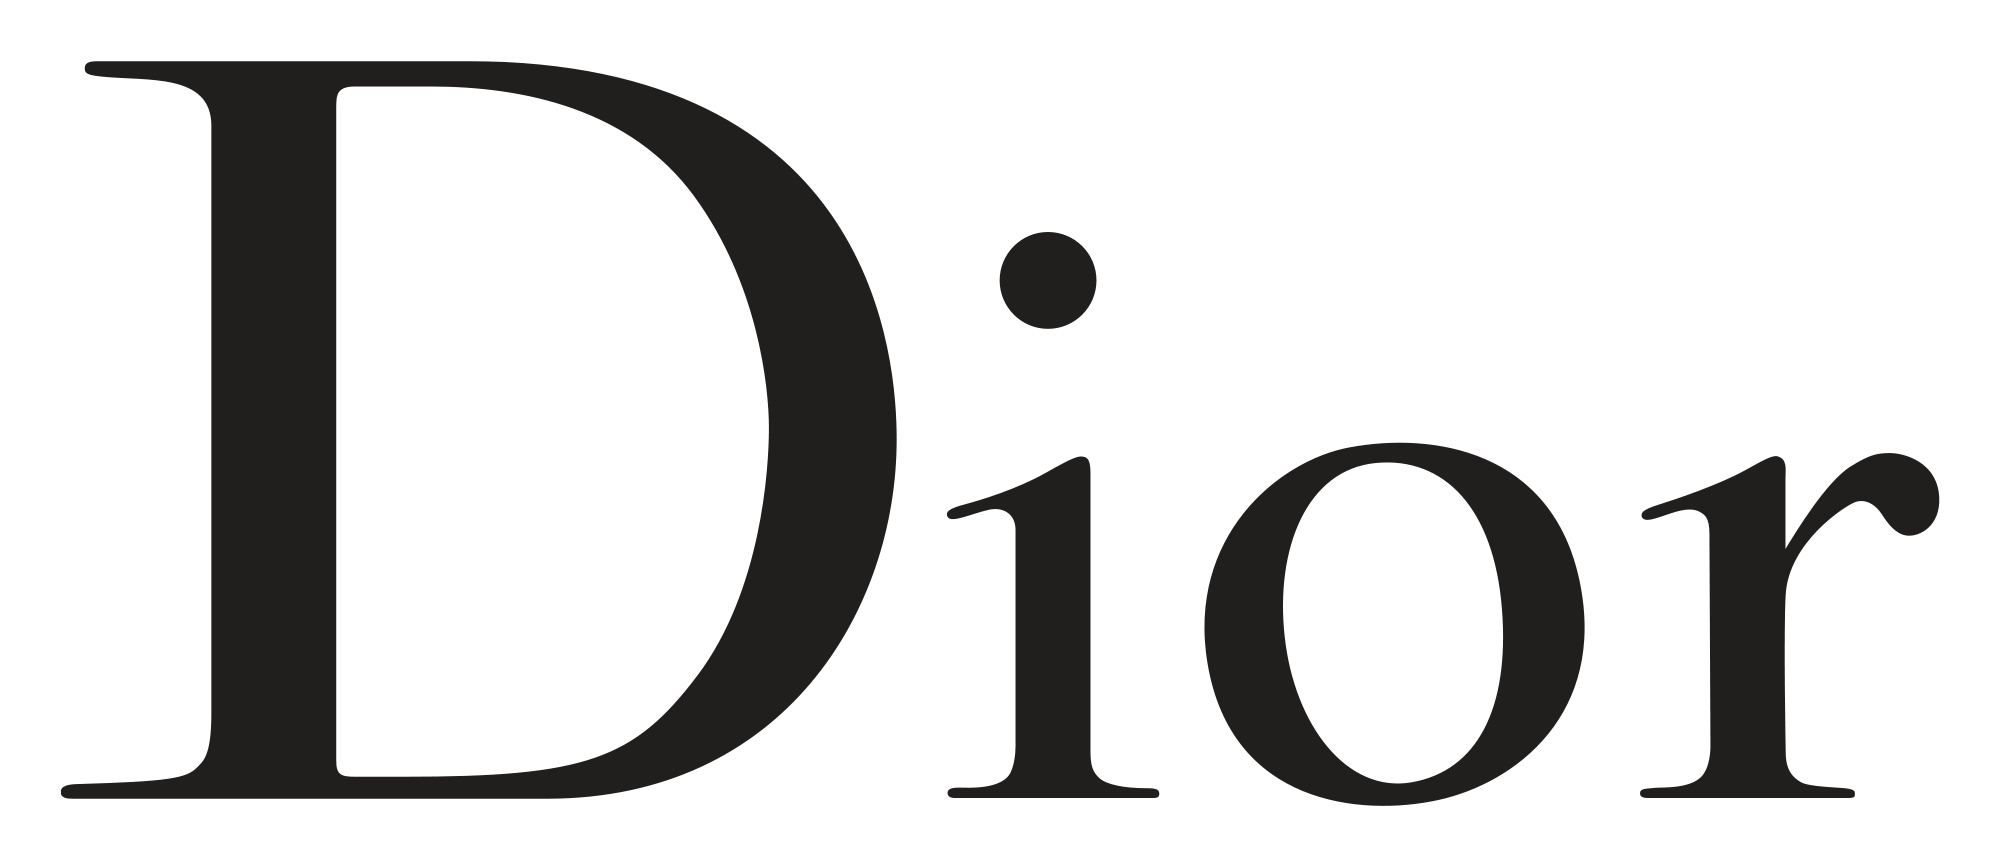 Profumi e cosmetica del marchio Dior